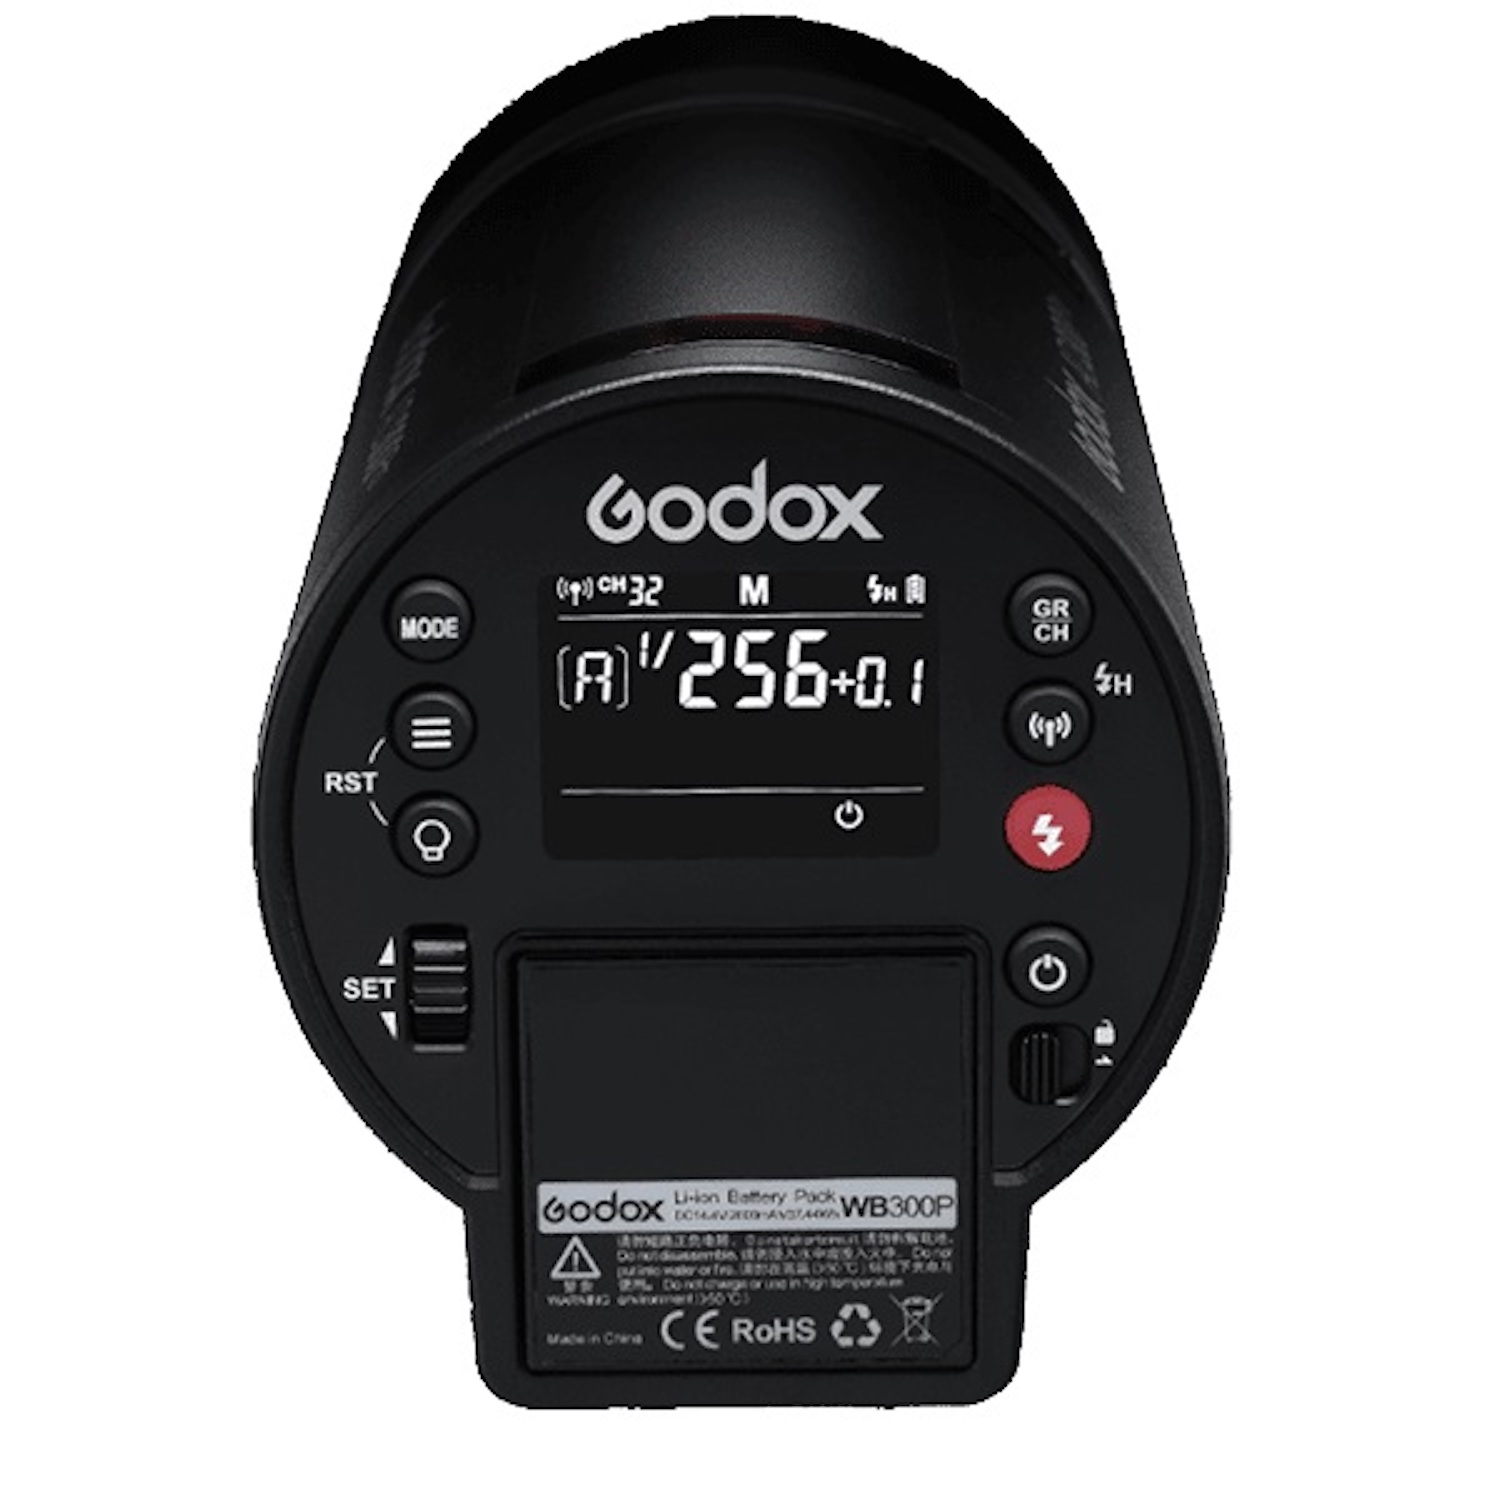 GODOX (TTL, Flash Studioblitz Manuel) HSS, Portable AD300Pro Outdoor